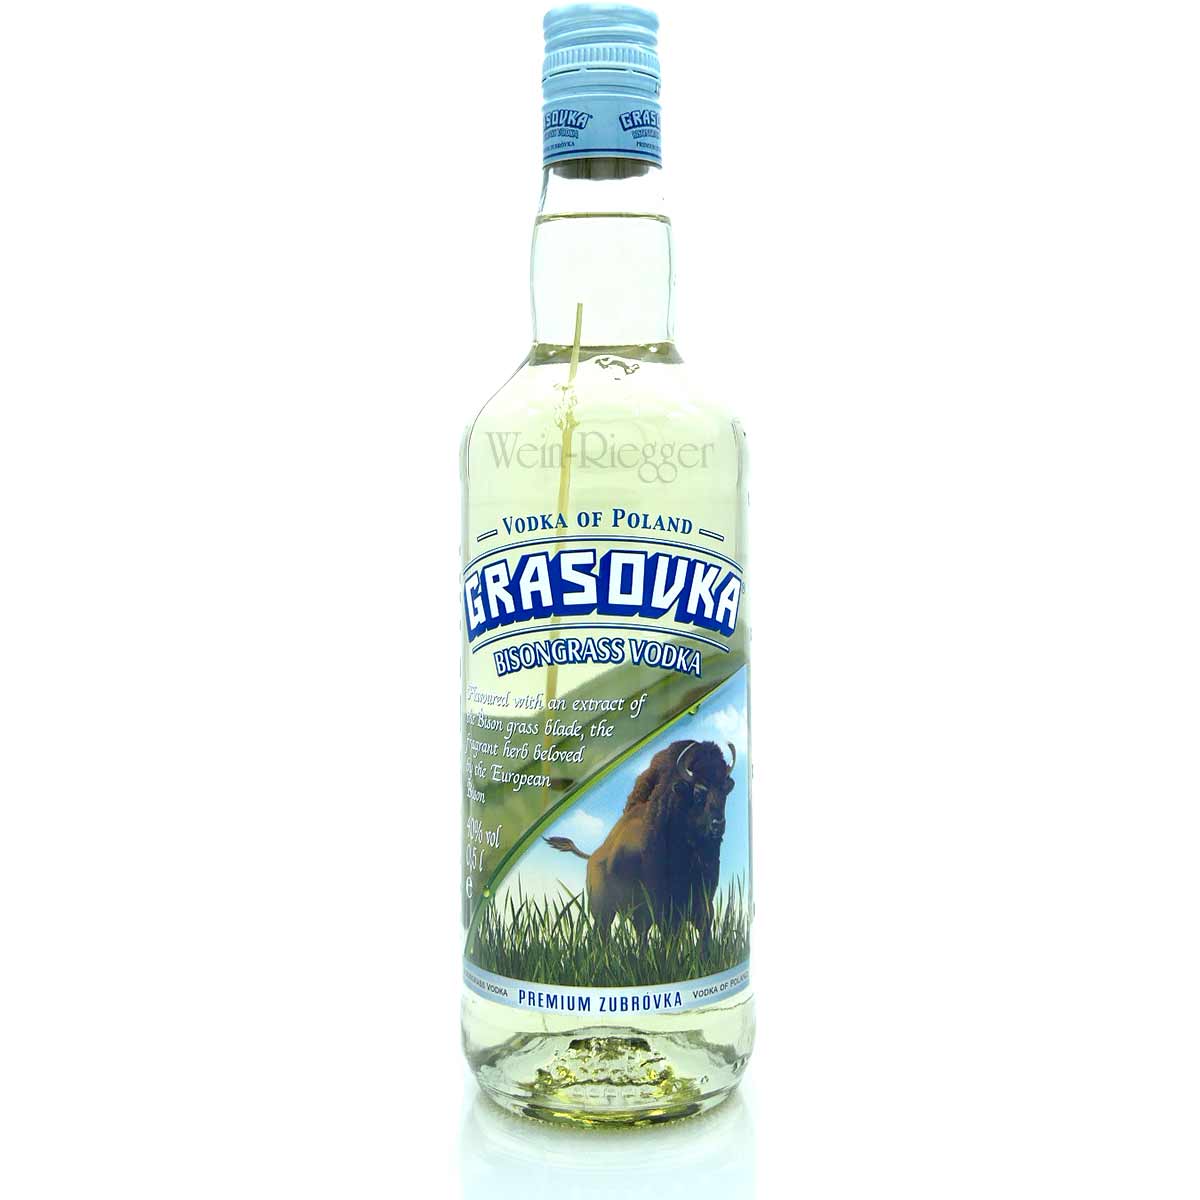 Wodka Grasovka Bisongrass 0,5 Poland Vodka of | Liter